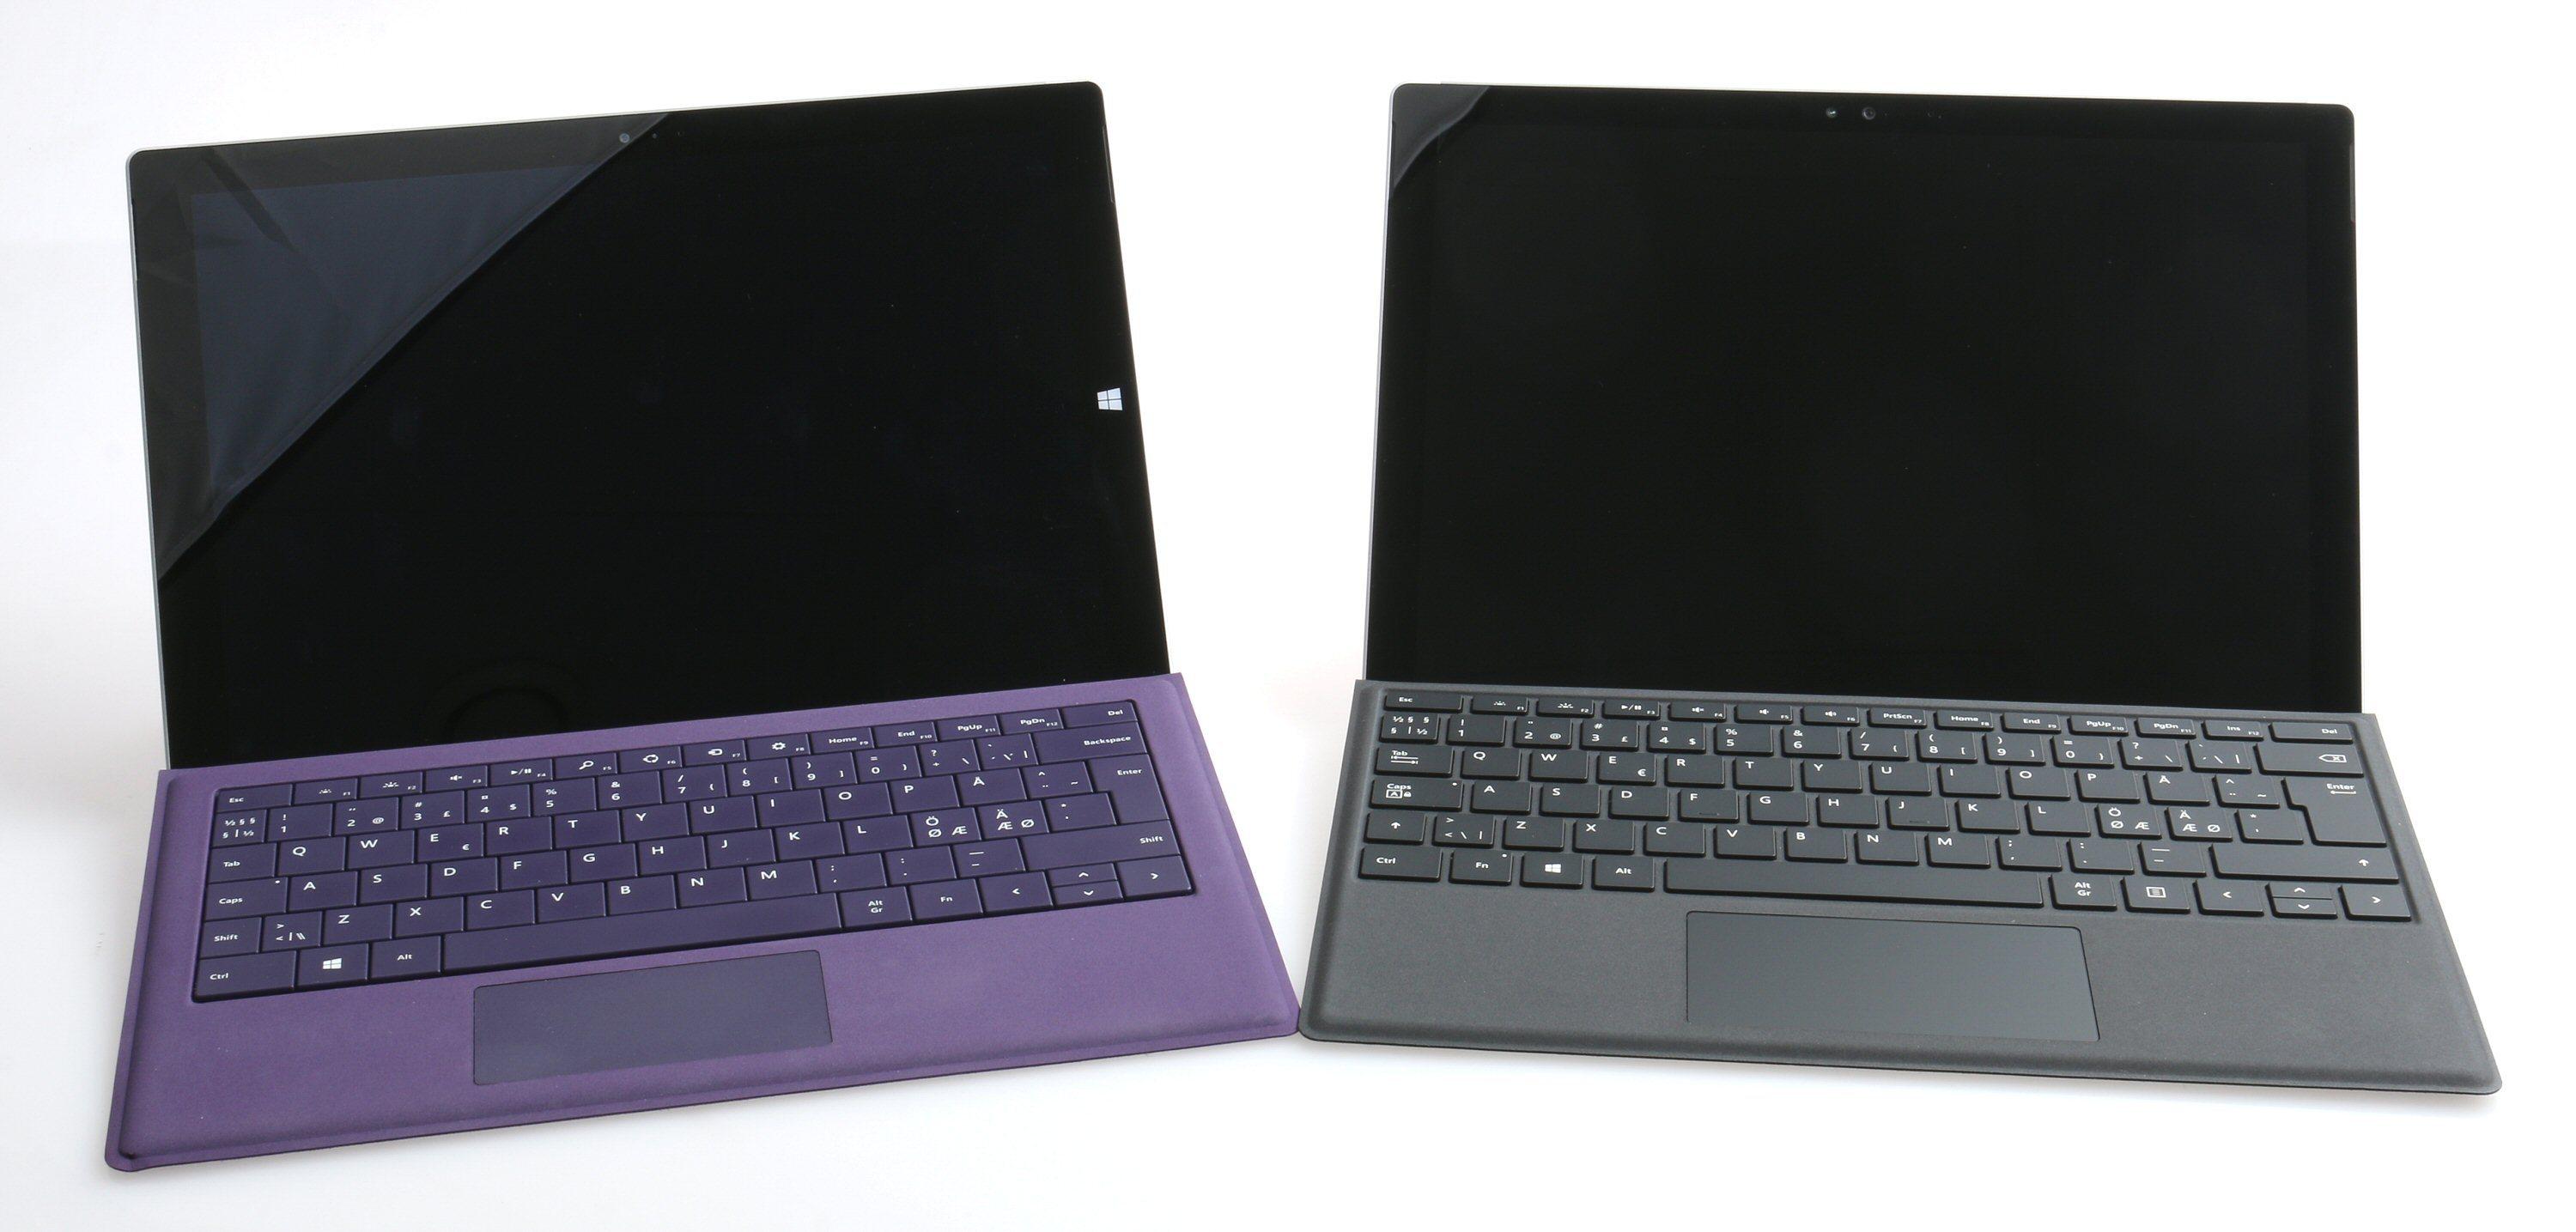 Surface Pro 3 og 4 er ganske så like, og kan bruke hverandres tastaturer og ladere. Foto: Vegar Jansen, Tek.no